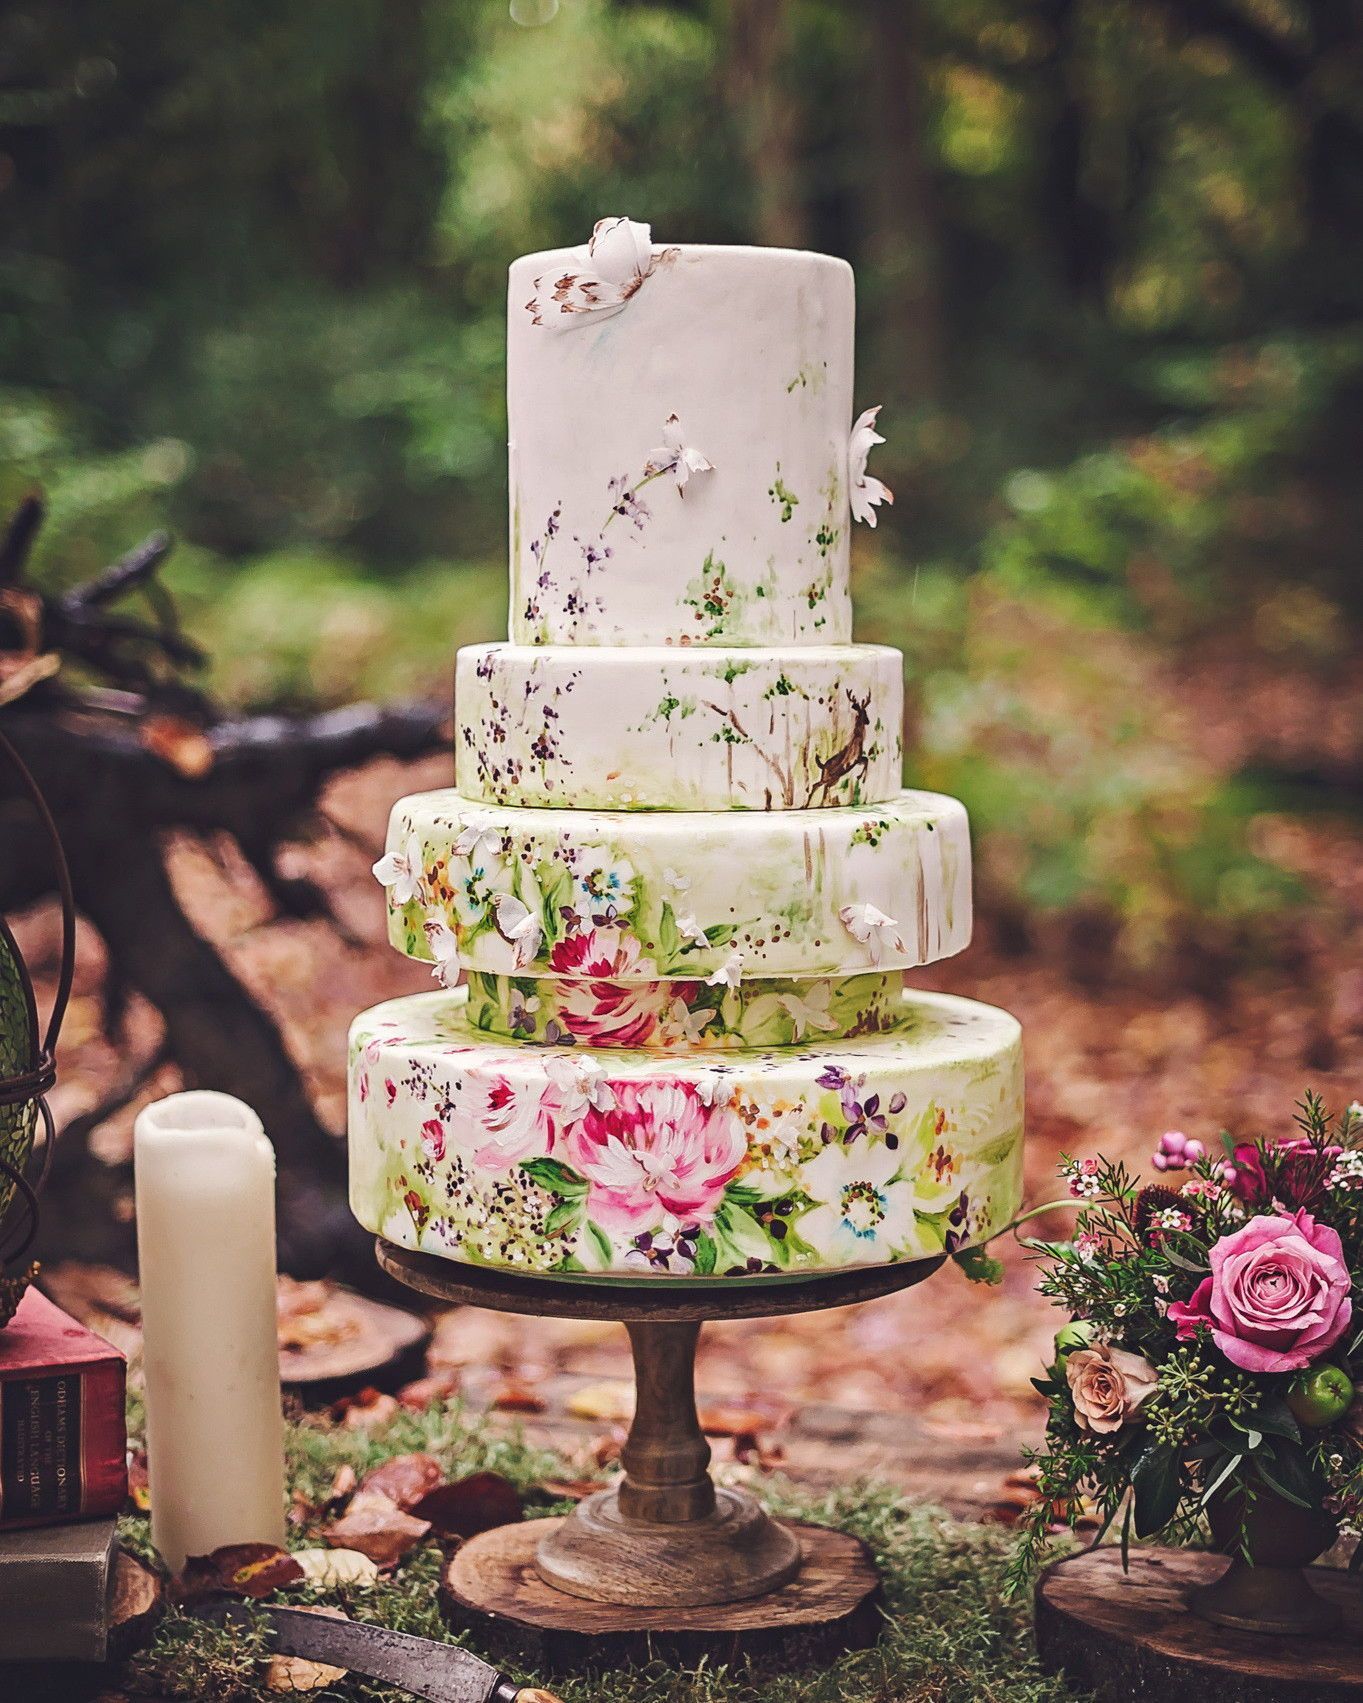 20 Amazing Fondant Wedding Cakes -   16 cake Simple martha stewart ideas